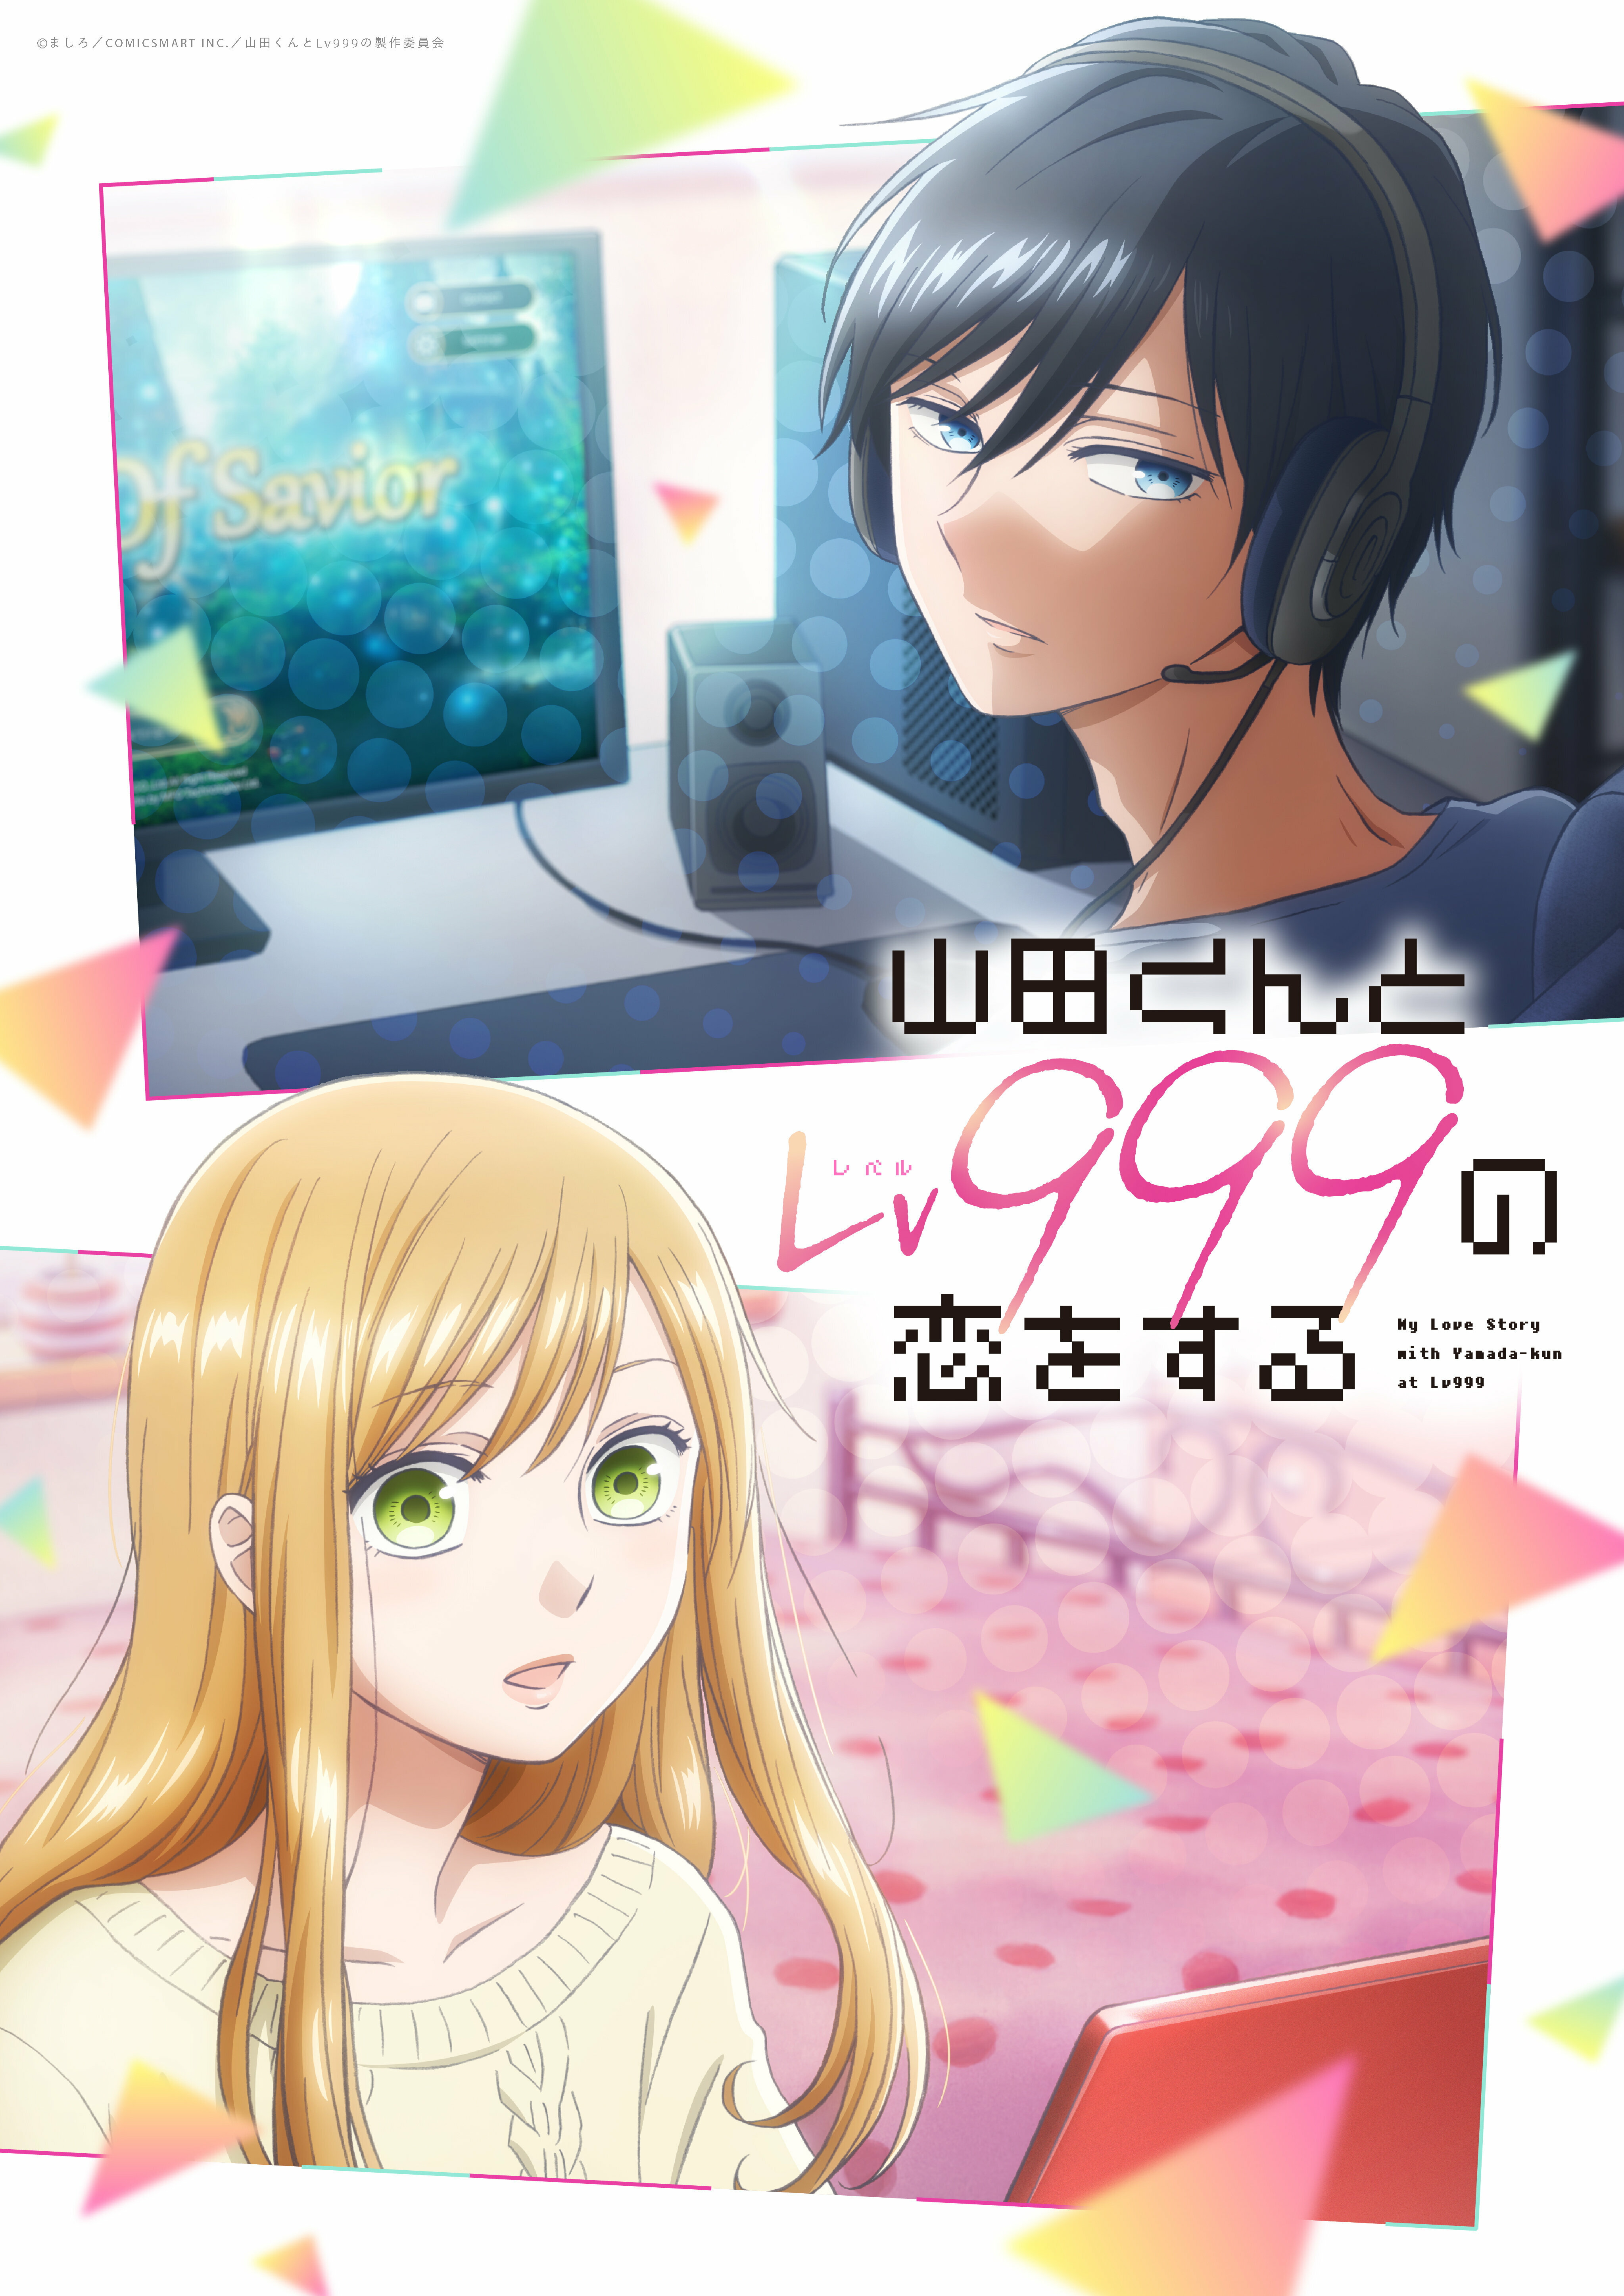 Loving Yamada at Lv999 (Official) Manga